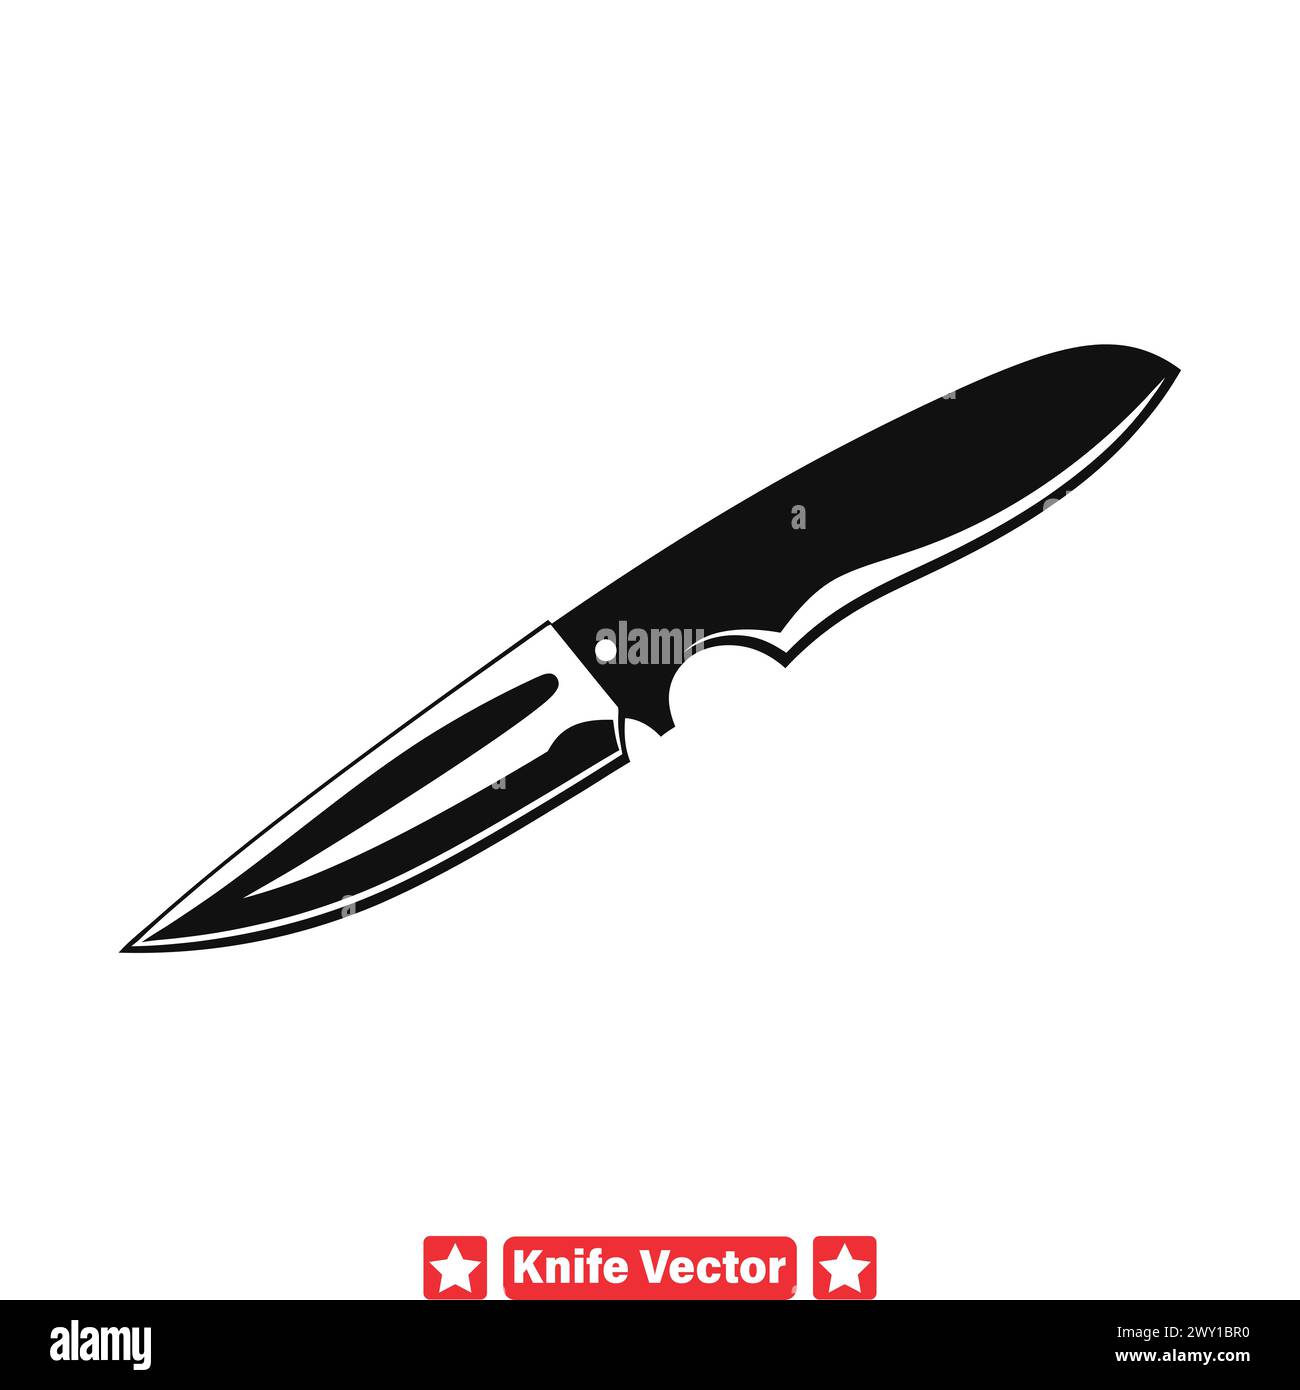 Elementos esenciales de diseño de borde de corte Explore el conjunto de siluetas de cuchillos para proyectos creativos Ilustración del Vector